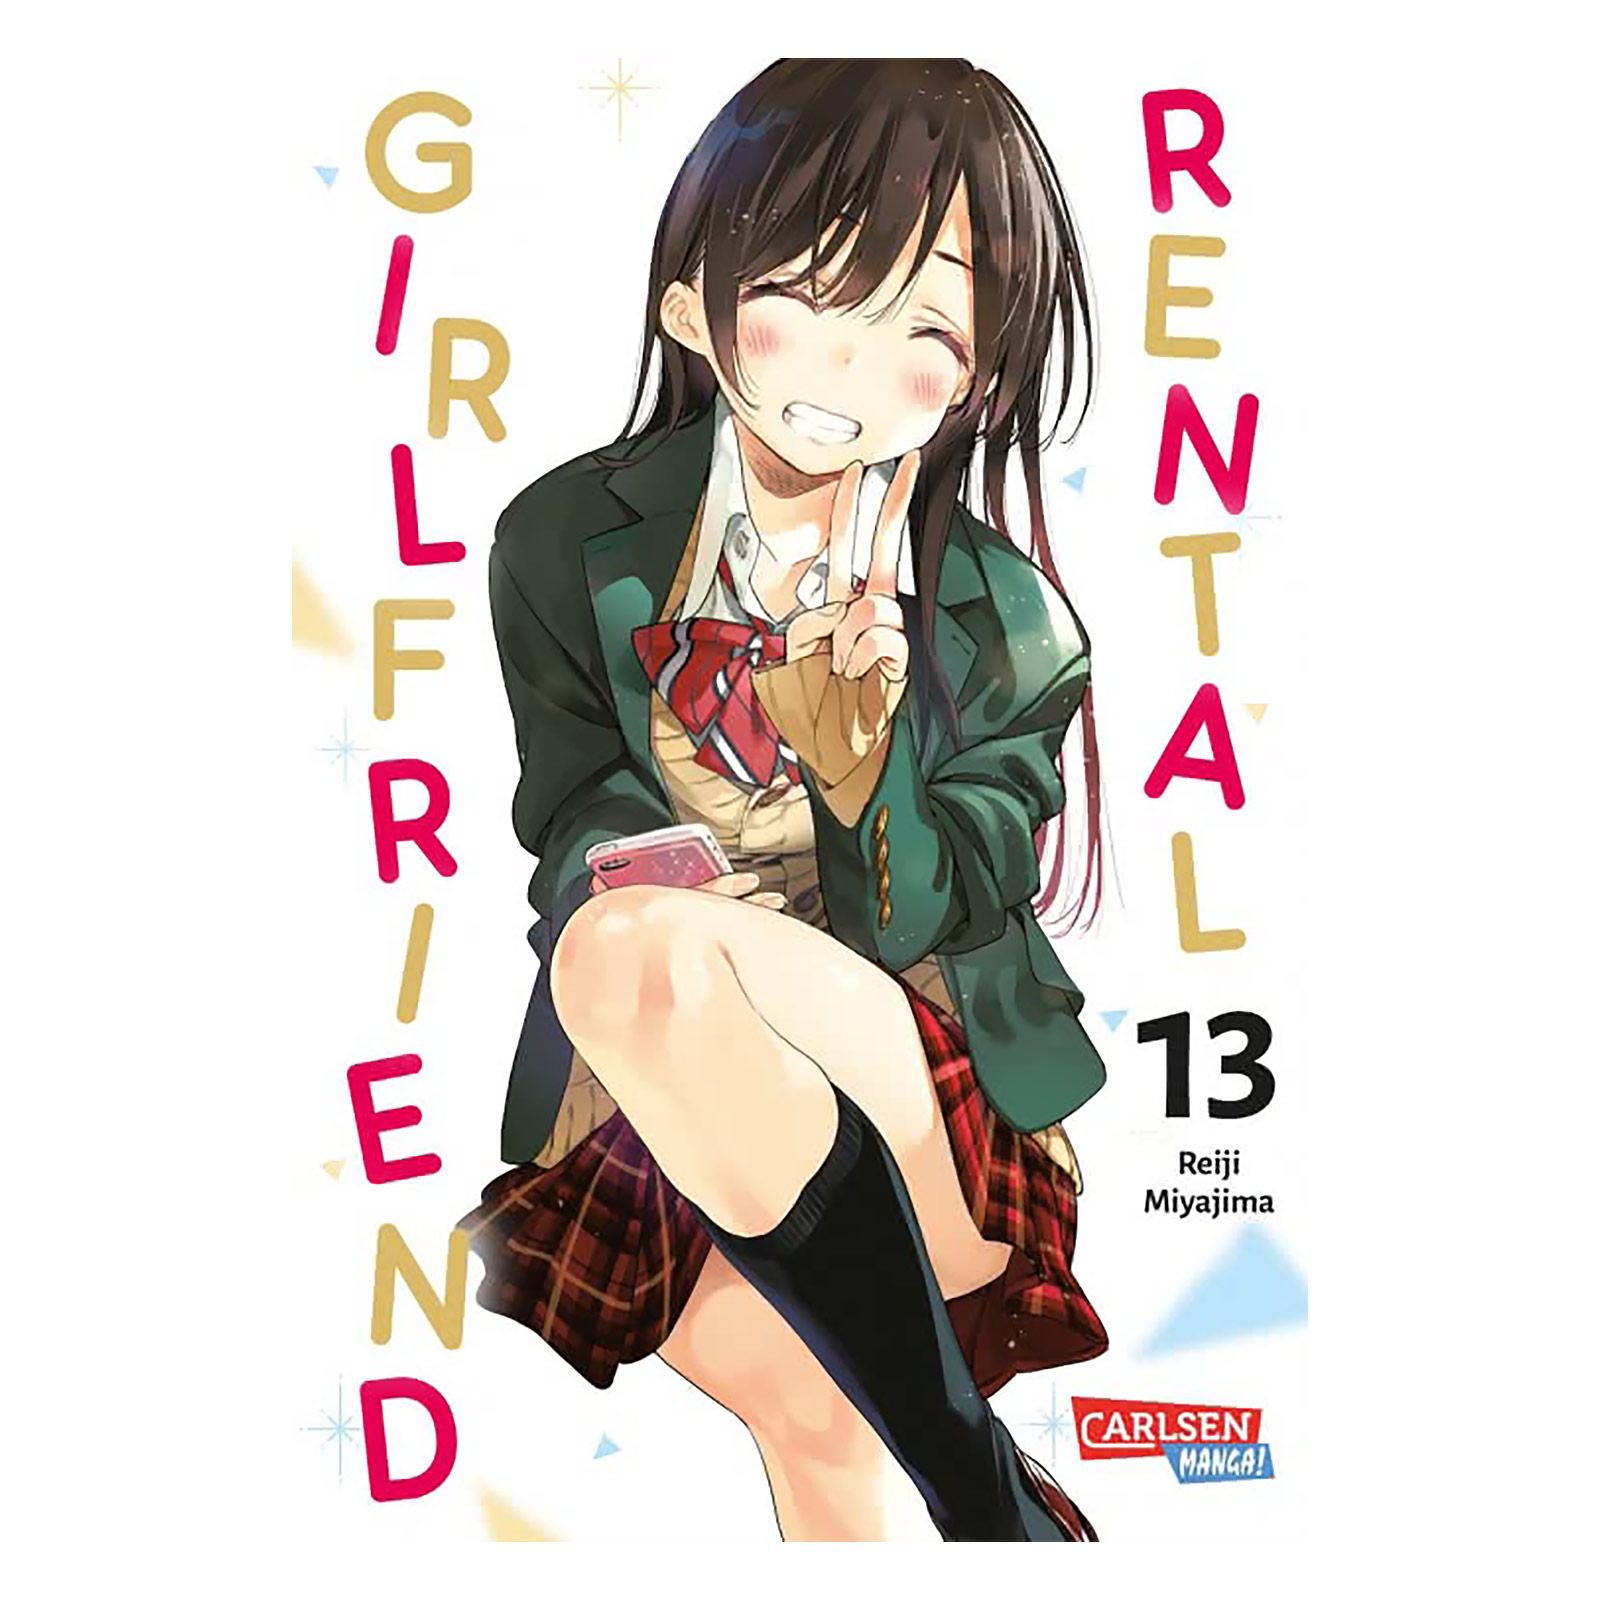 Rental Girlfriend - Volume 13 Paperback